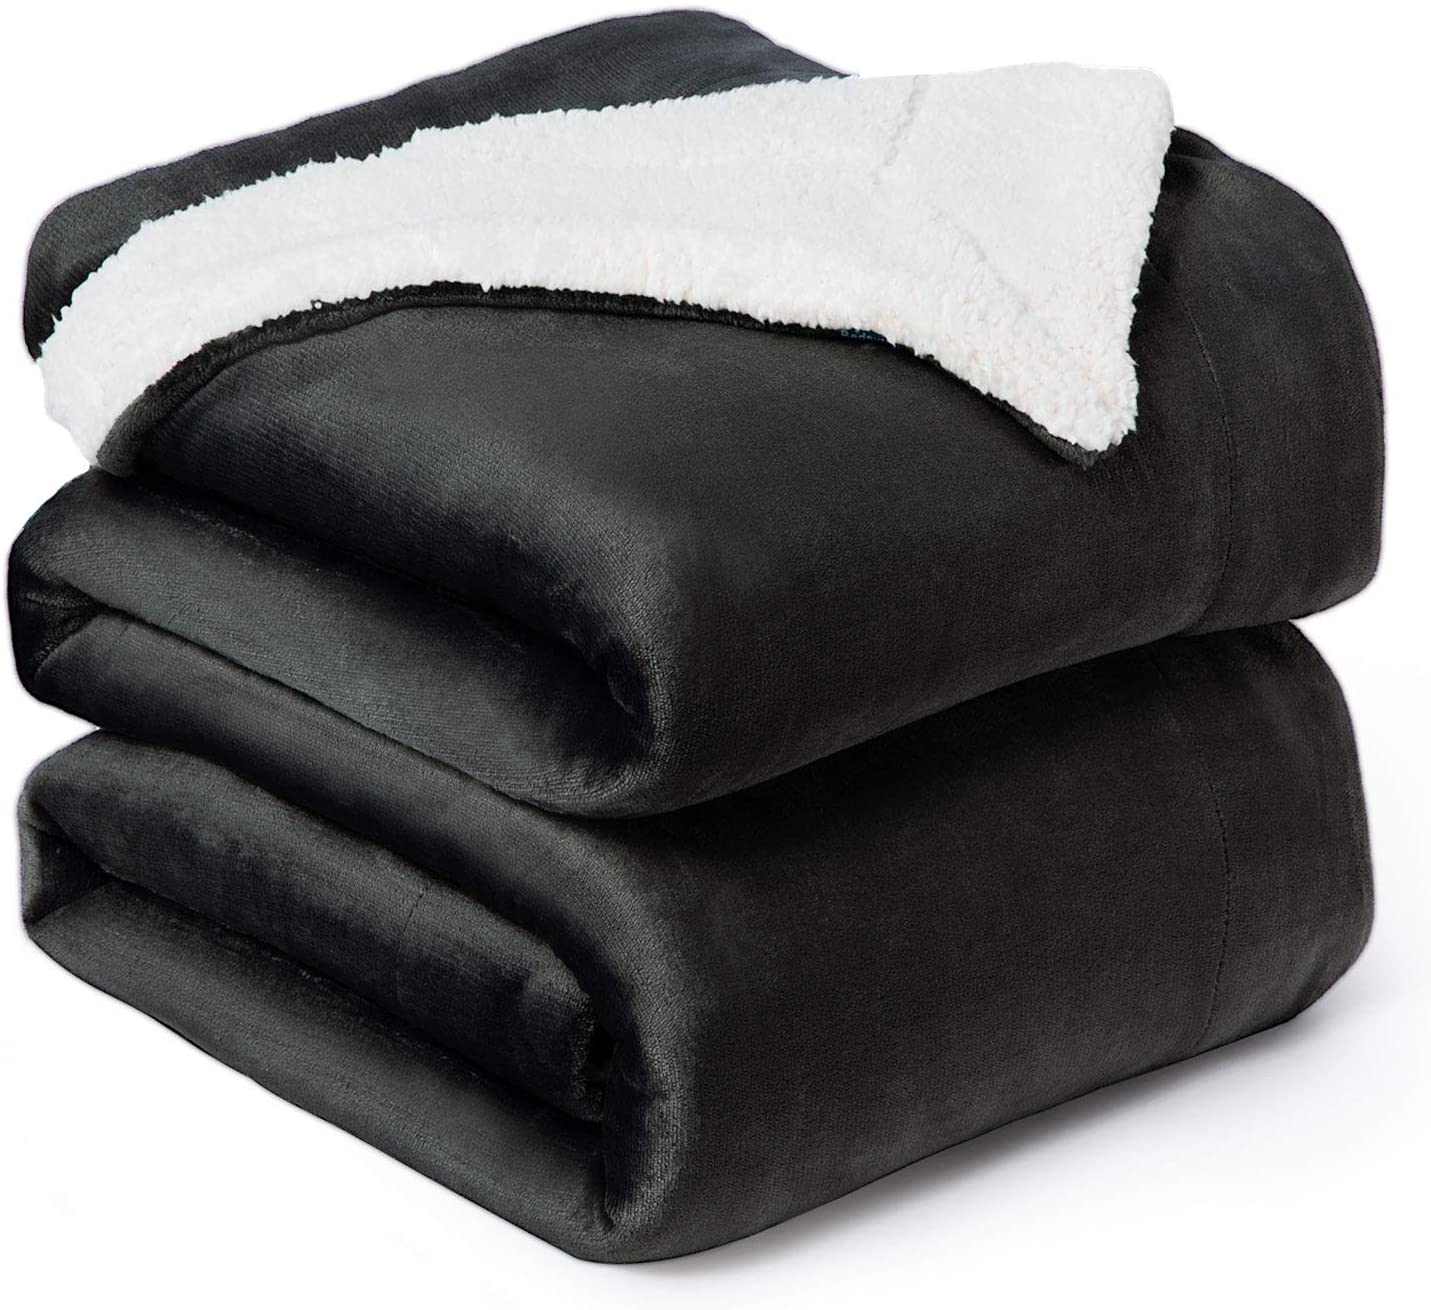 Bedsure Sherpa Fleece Blanket Twin Size Navy Blue Plush Blanket Fuzzy Soft Blank 